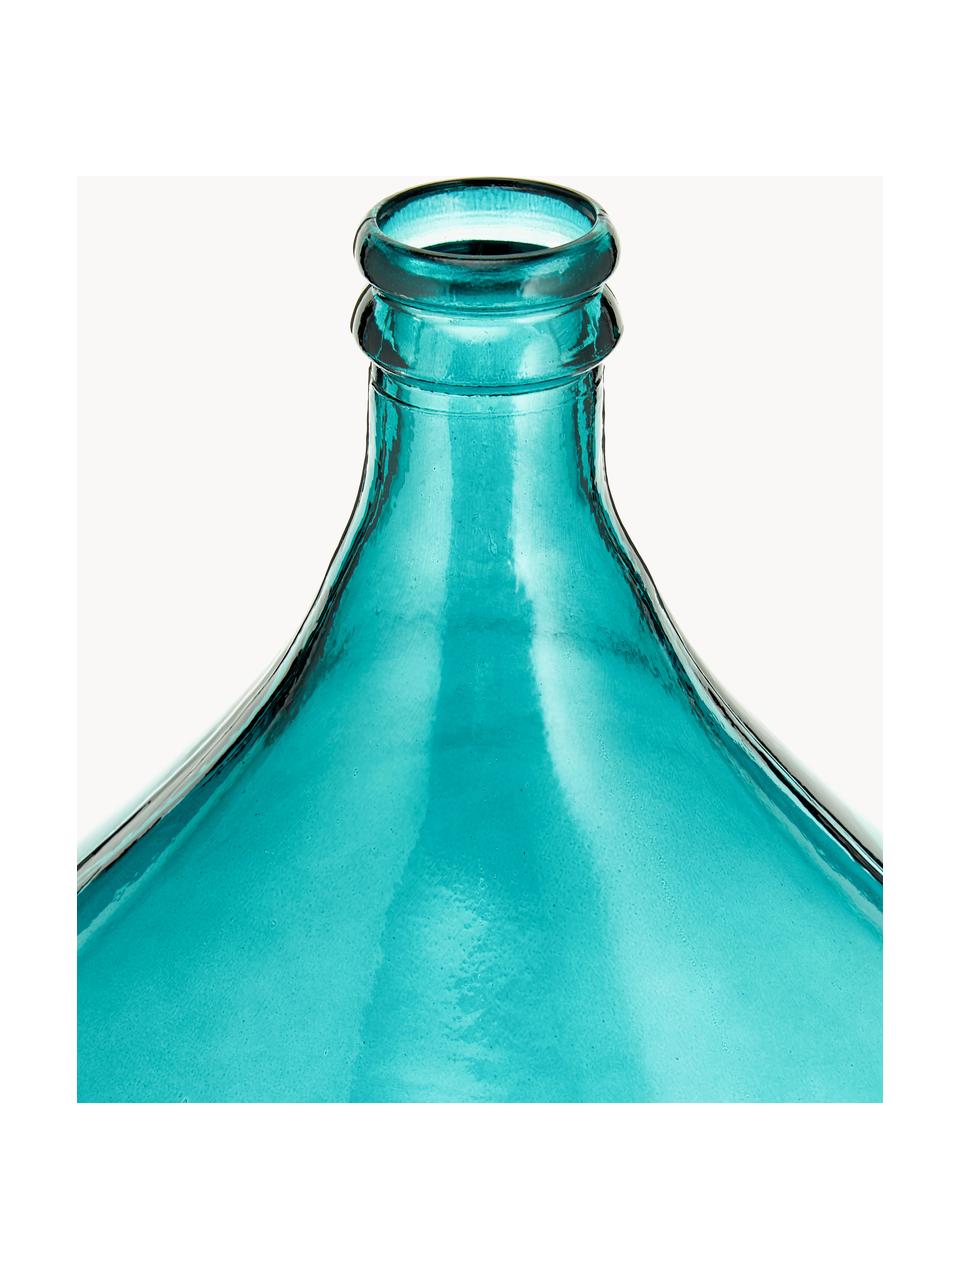 Dame Jeanne en verre recyclé Drop, haut. 56 cm, Verre recyclé, Bleu pétrole, Ø 40 x haut. 56 cm